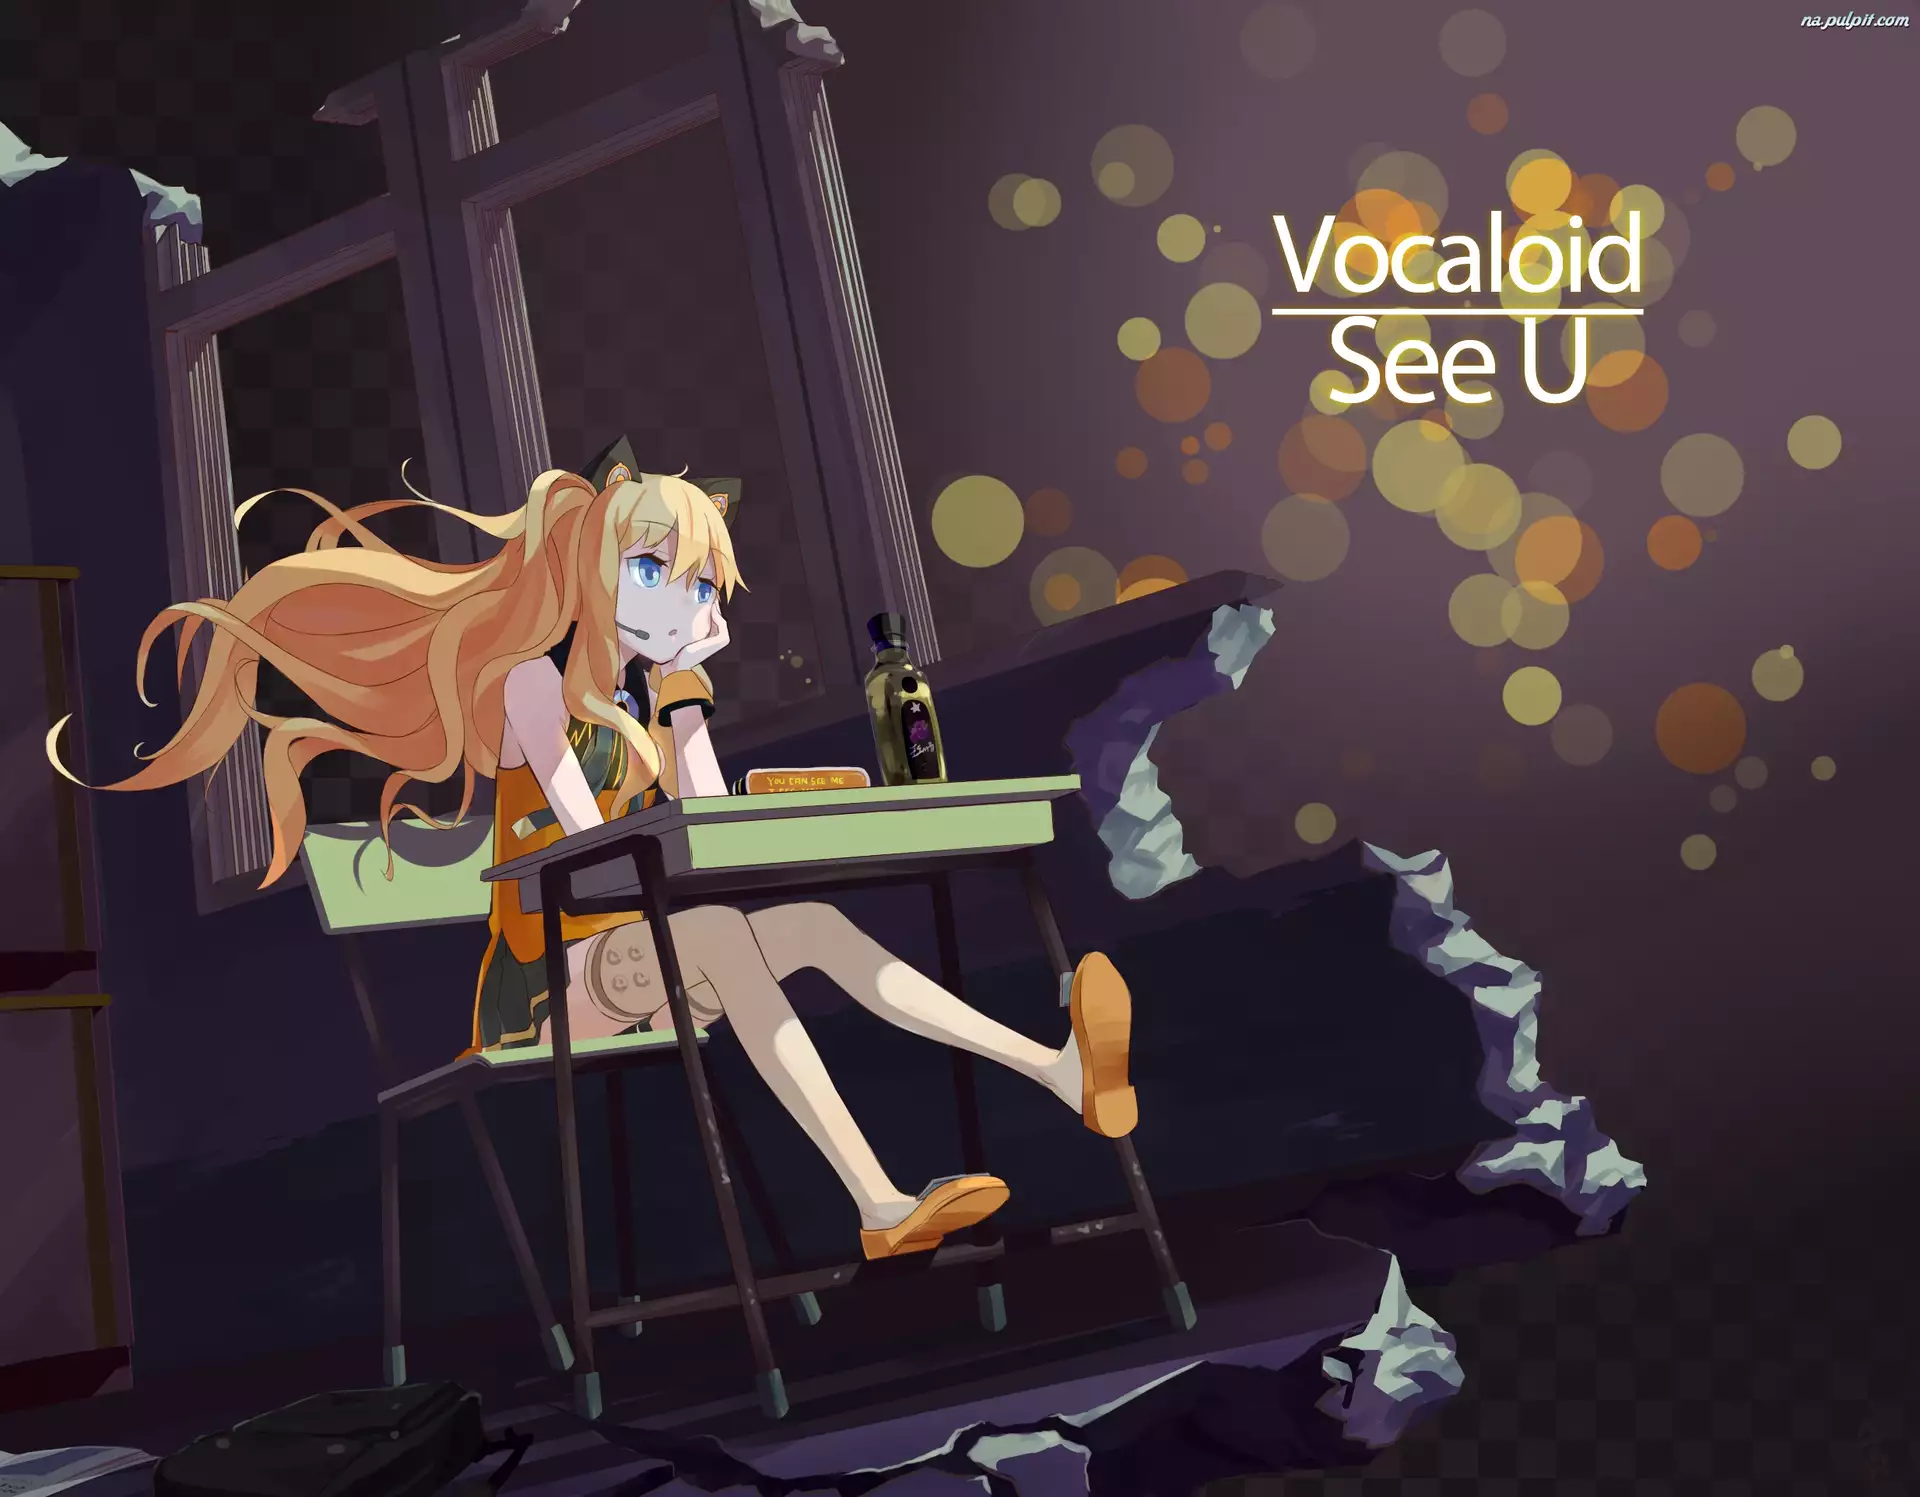 SeeU, Vocaloid